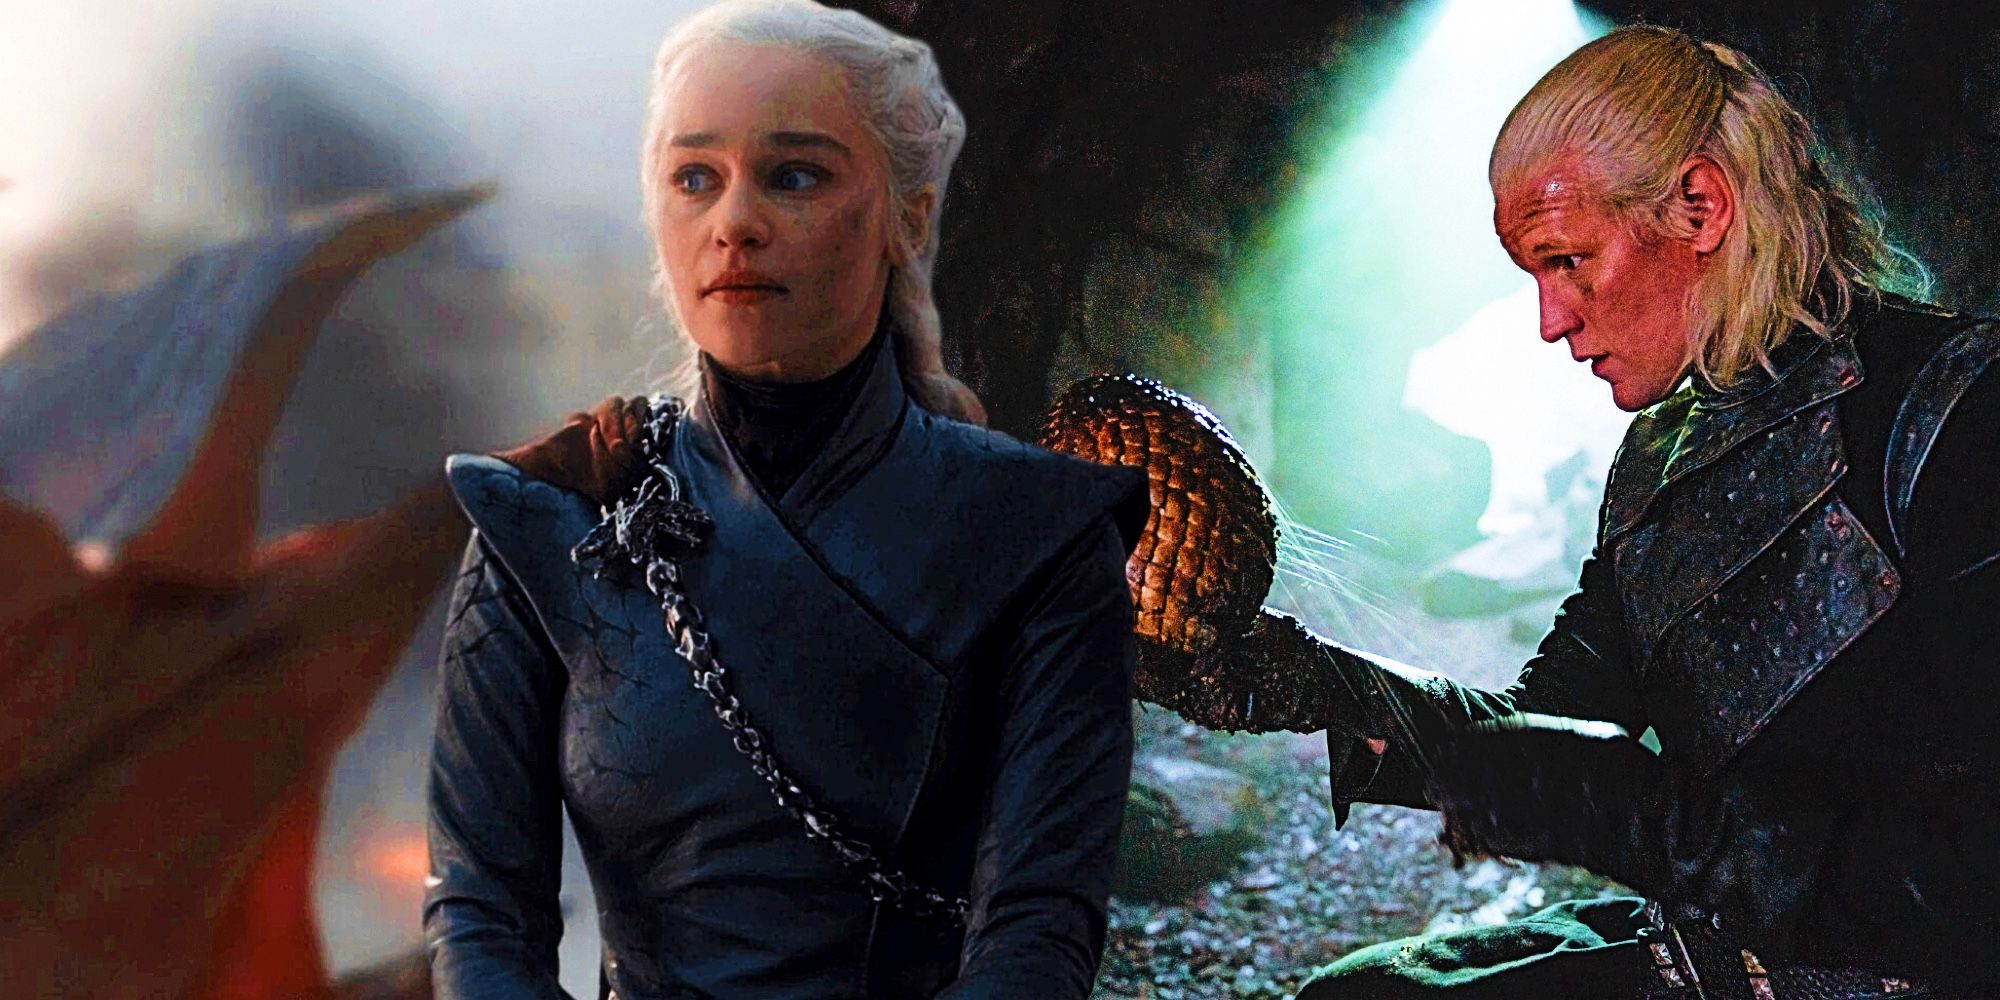 GOT's Daenerys Targaryen and HOTD's Daemon Targaryen